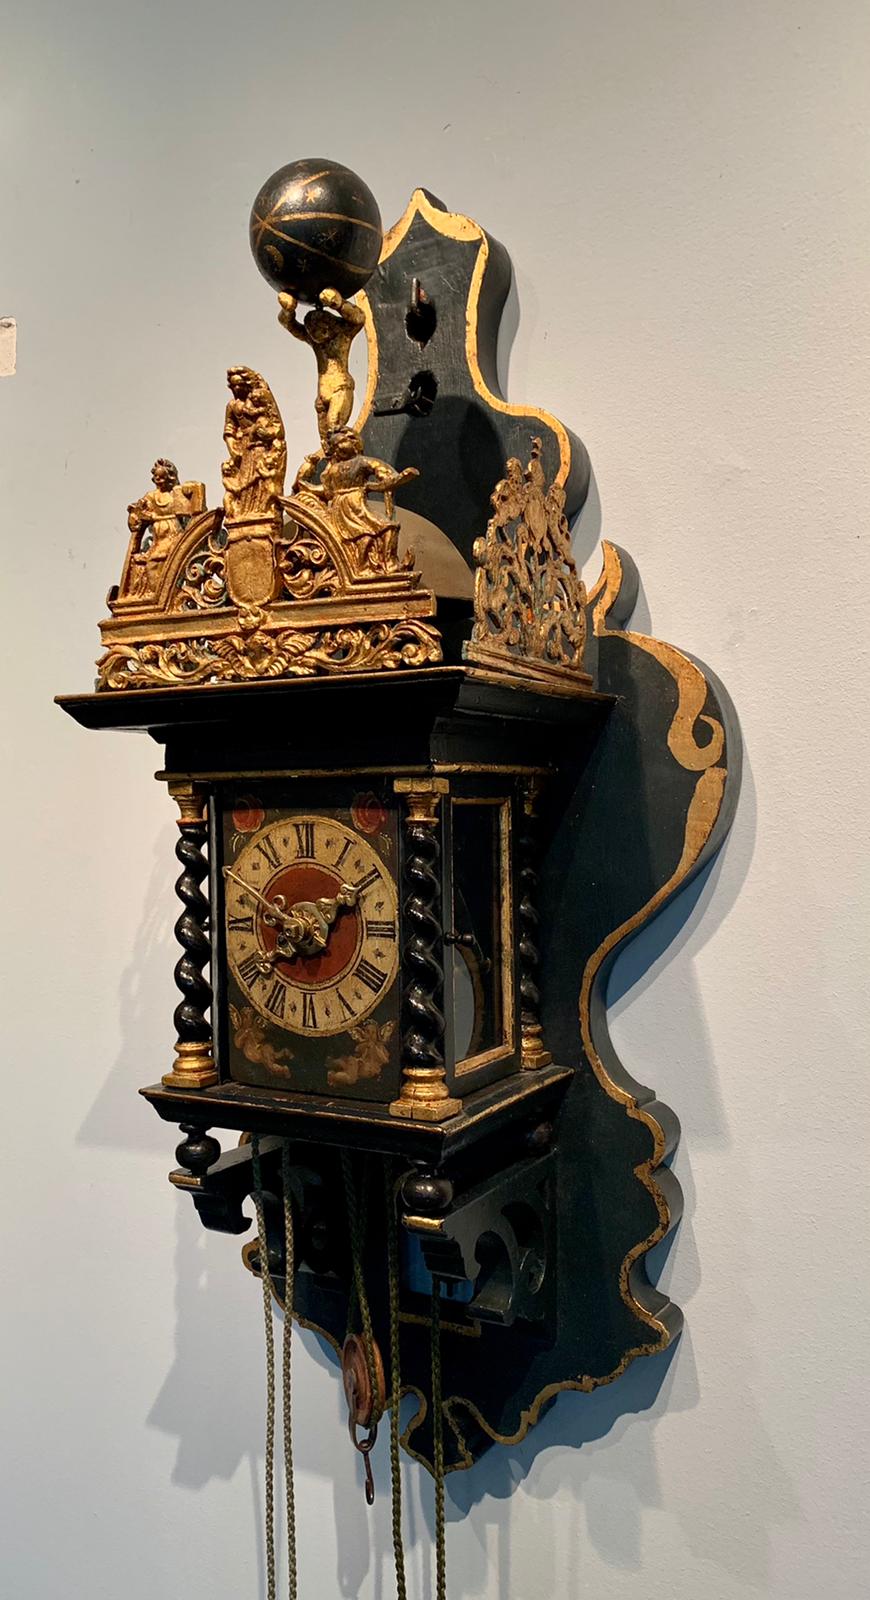 Verkoop antieke klokken barometers van den Assem